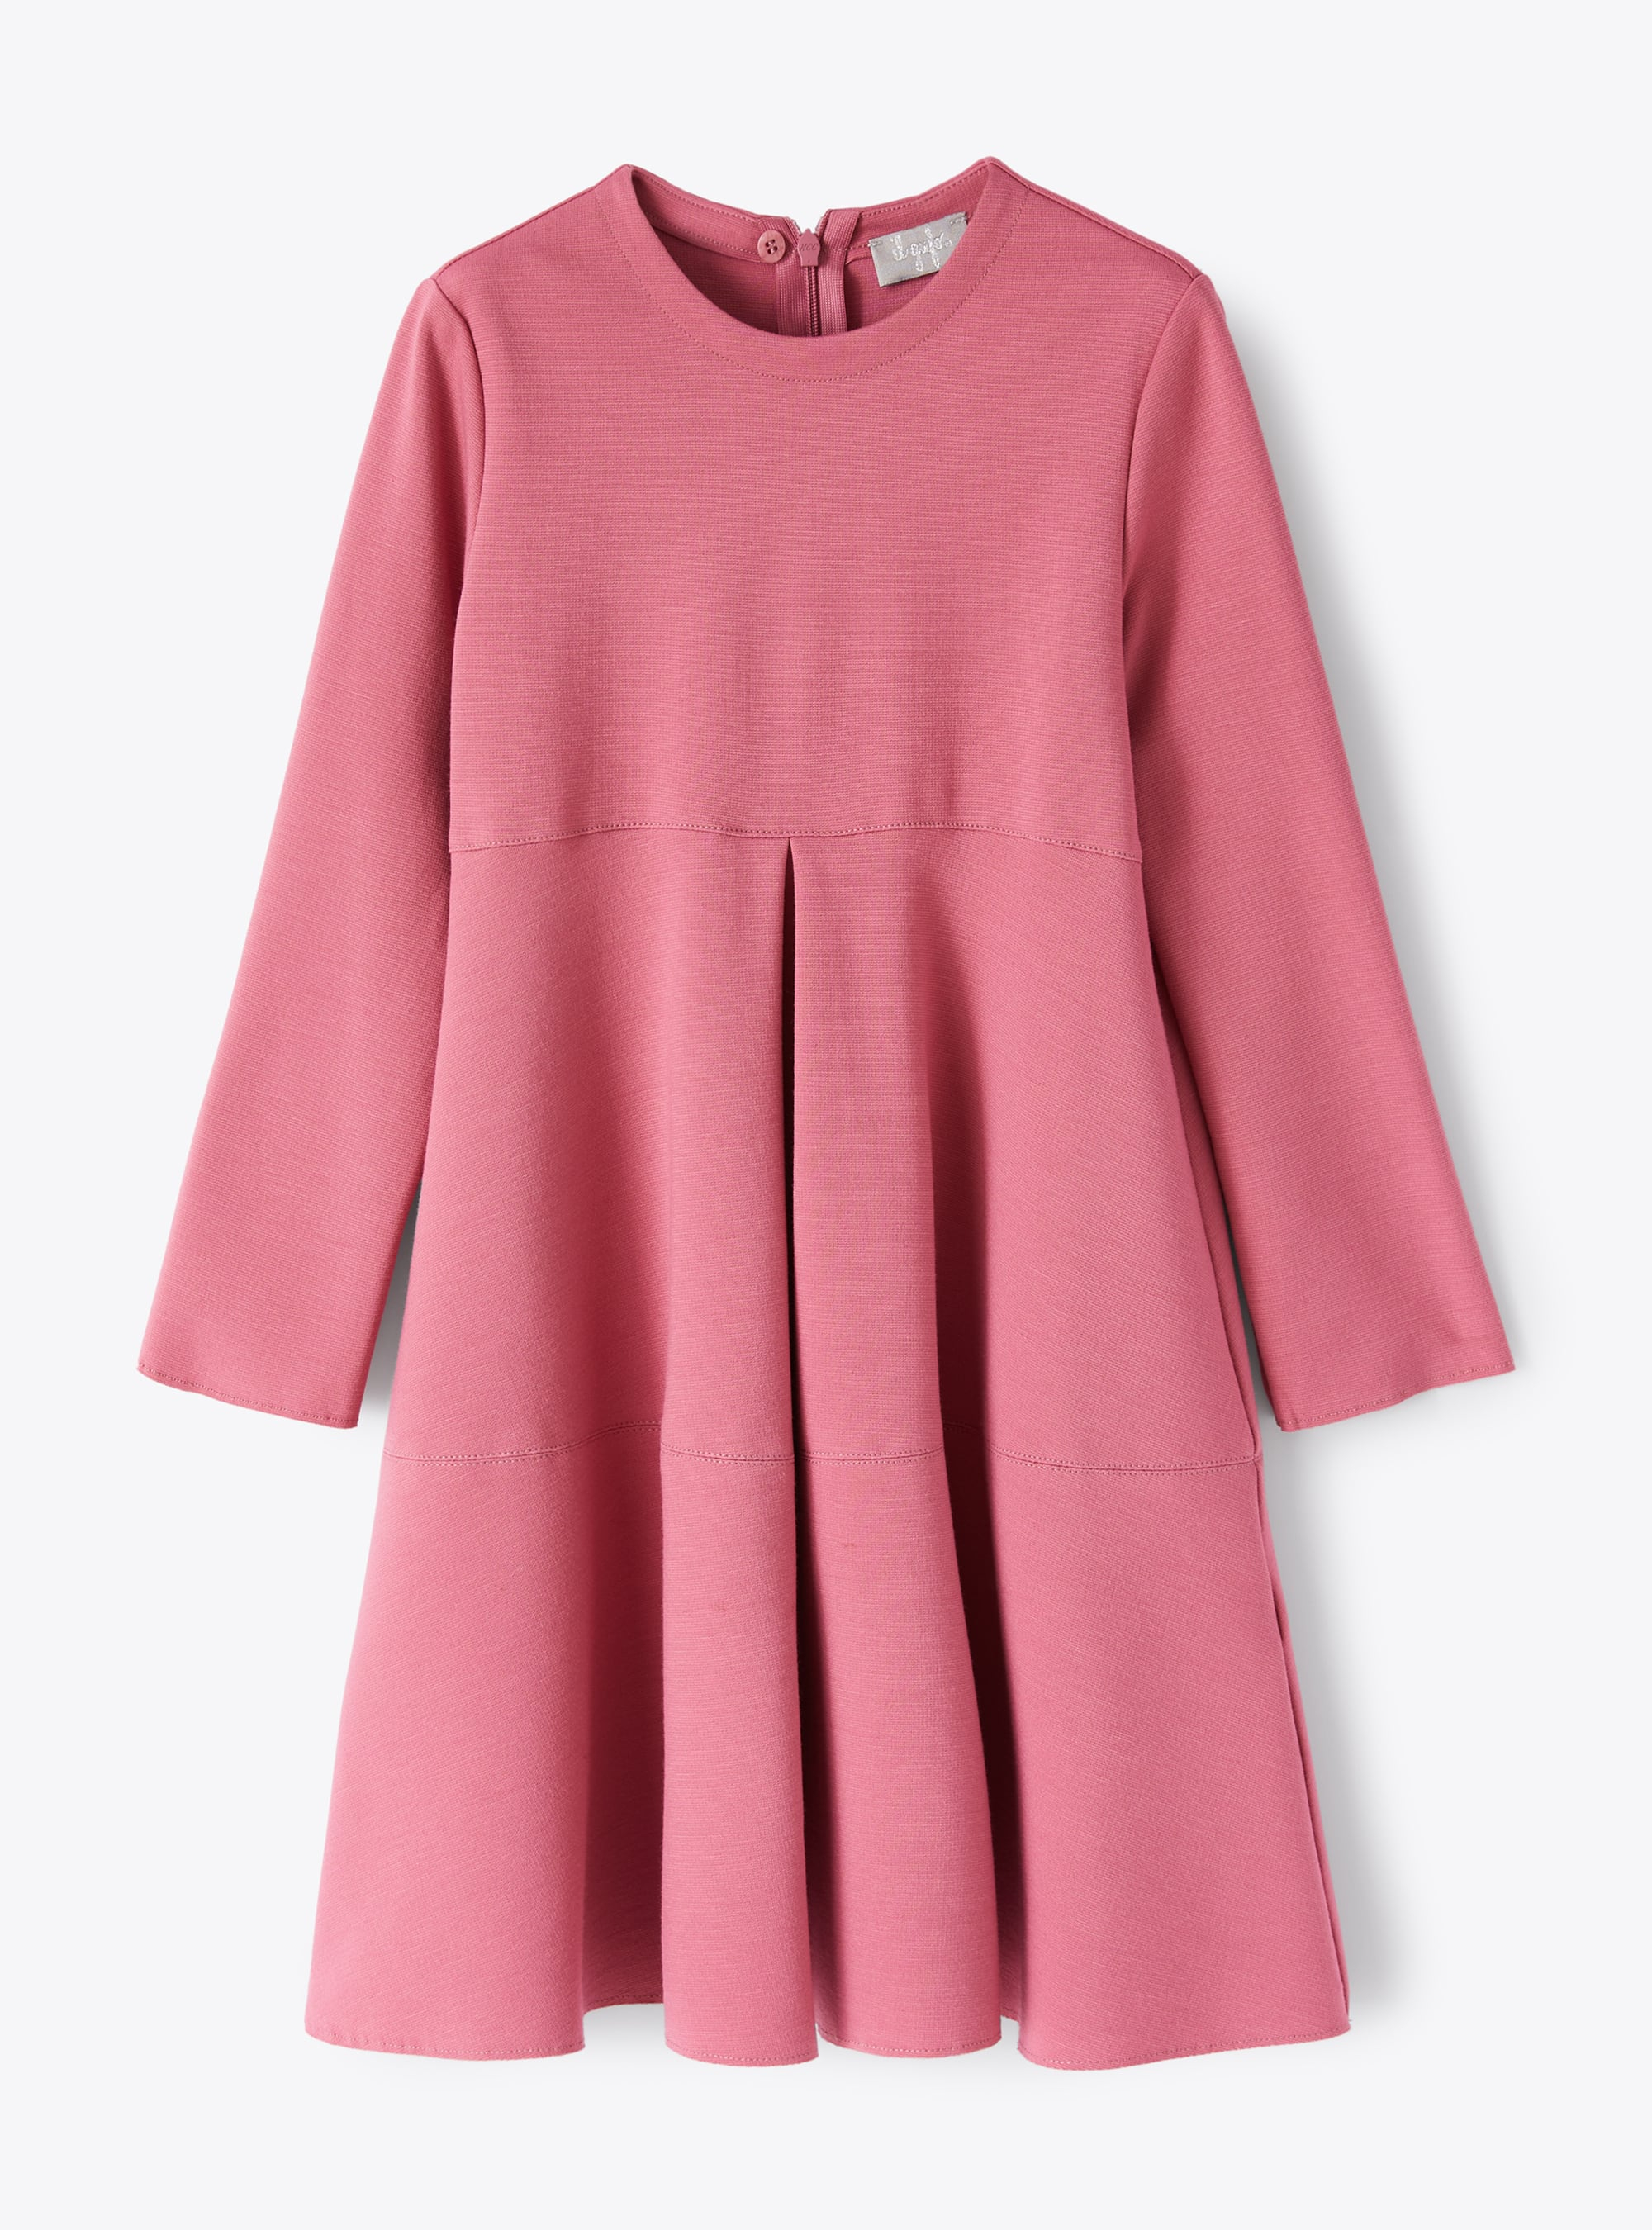 Pinkfarbenes Kleid mit Kellerfalte - Rot | Il Gufo